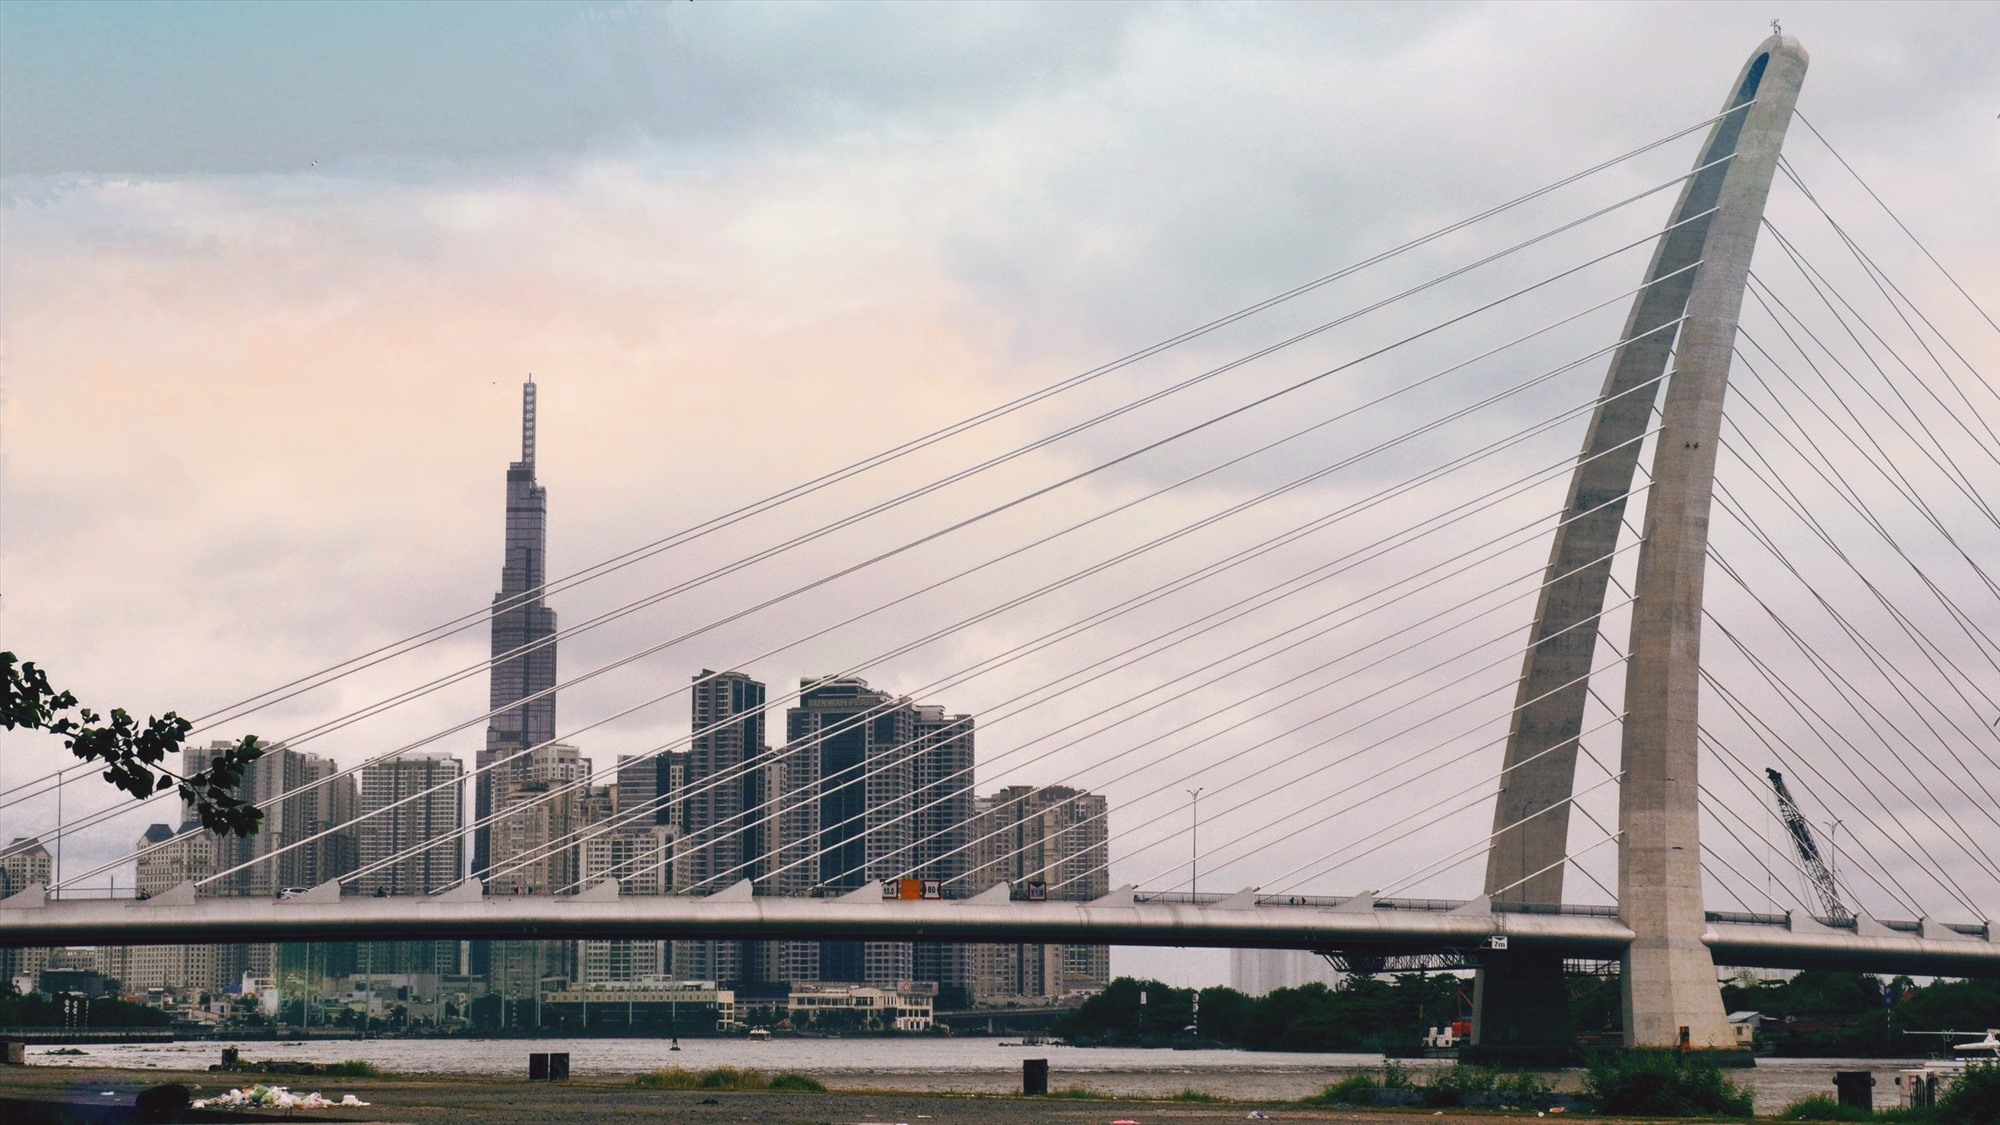  Cầu Thủ Thiêm 2 (nay là cầu Ba Son) chính thức thông xe vào năm 2022. Nhịp chính của cầu có thiết kế dây văng bất đối xứng, với trụ tháp hình vòm cao 113 m nghiêng về phía Thủ Thiêm, TP Thủ Đức với bề mặt được đỡ bằng 56 bó cáp dây văng.